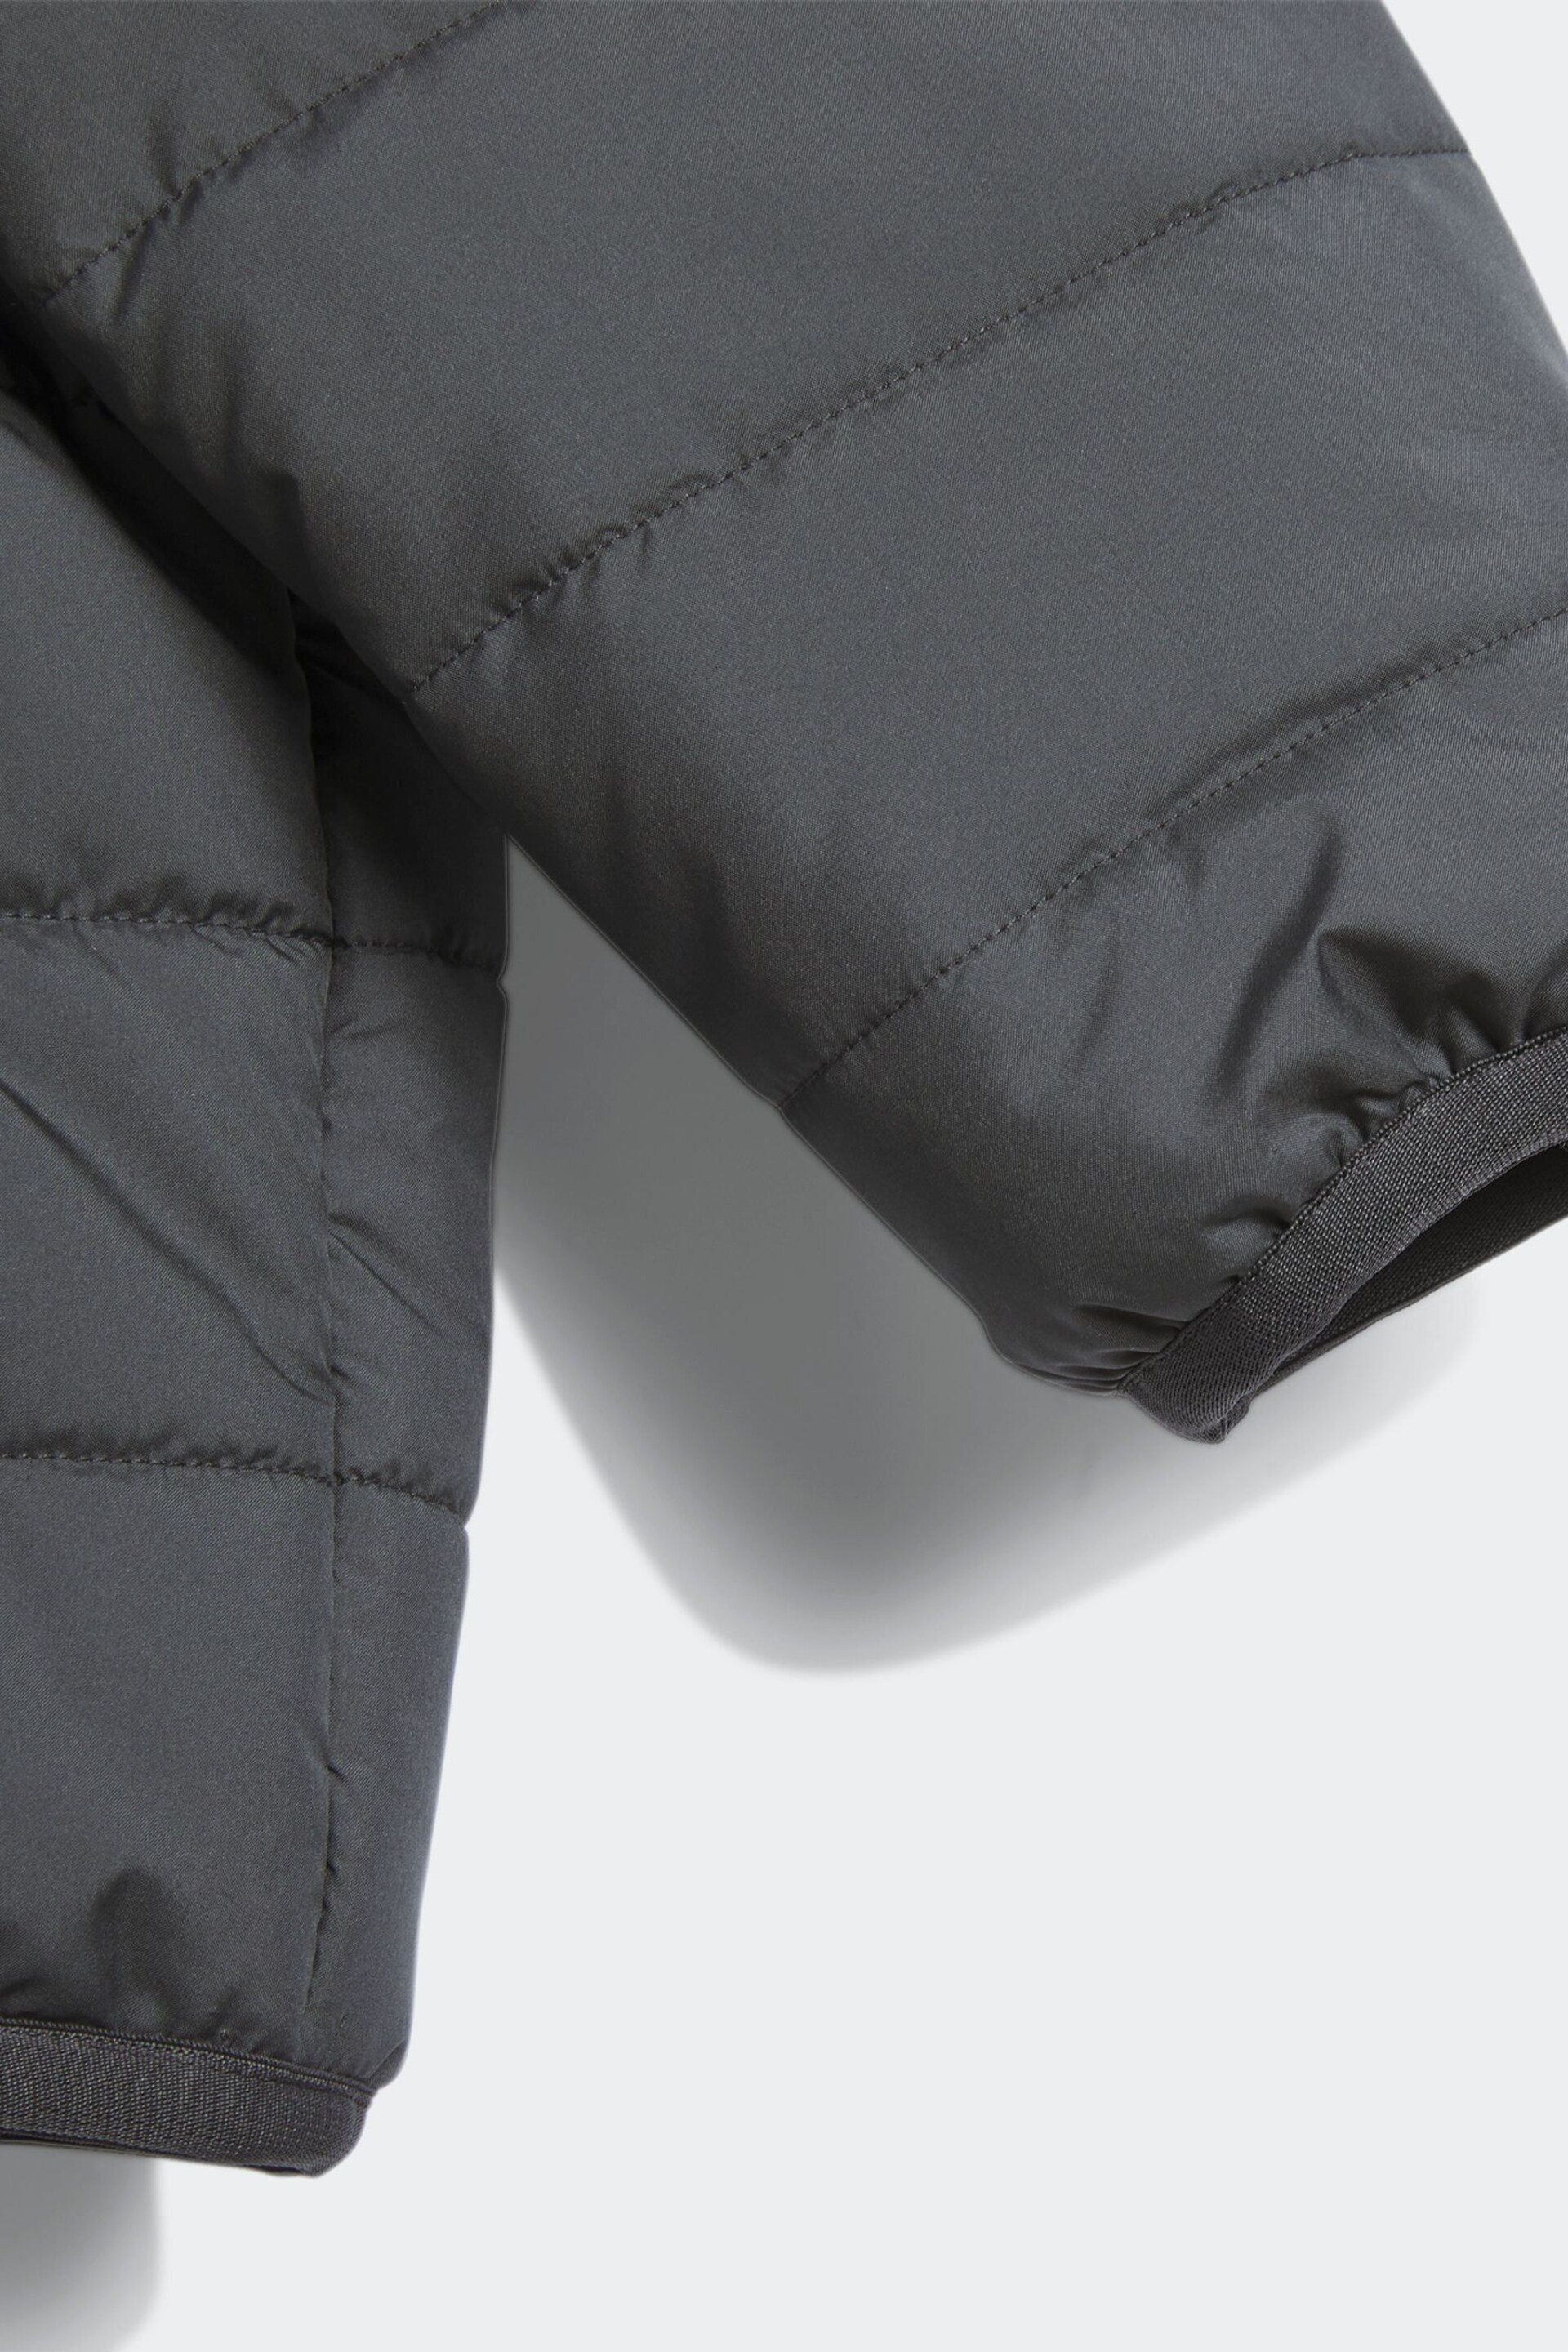 adidas Black Infant Padded Jacket - Image 4 of 4